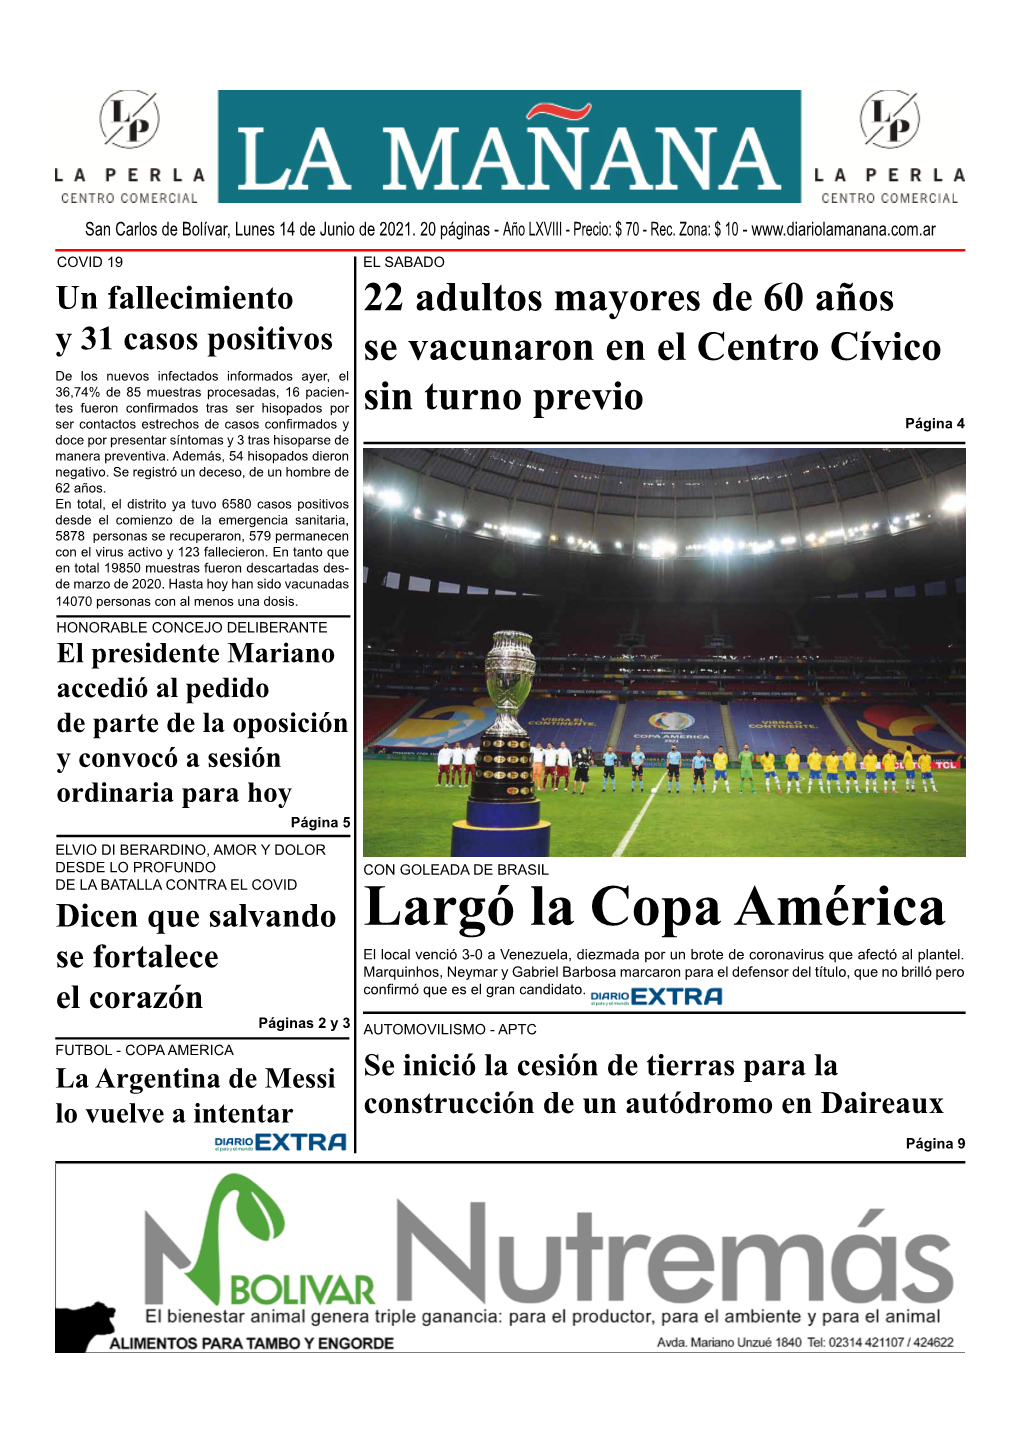 Largó La Copa América El Local Venció 3-0 a Venezuela, Diezmada Por Un Brote De Coronavirus Que Afectó Al Plantel